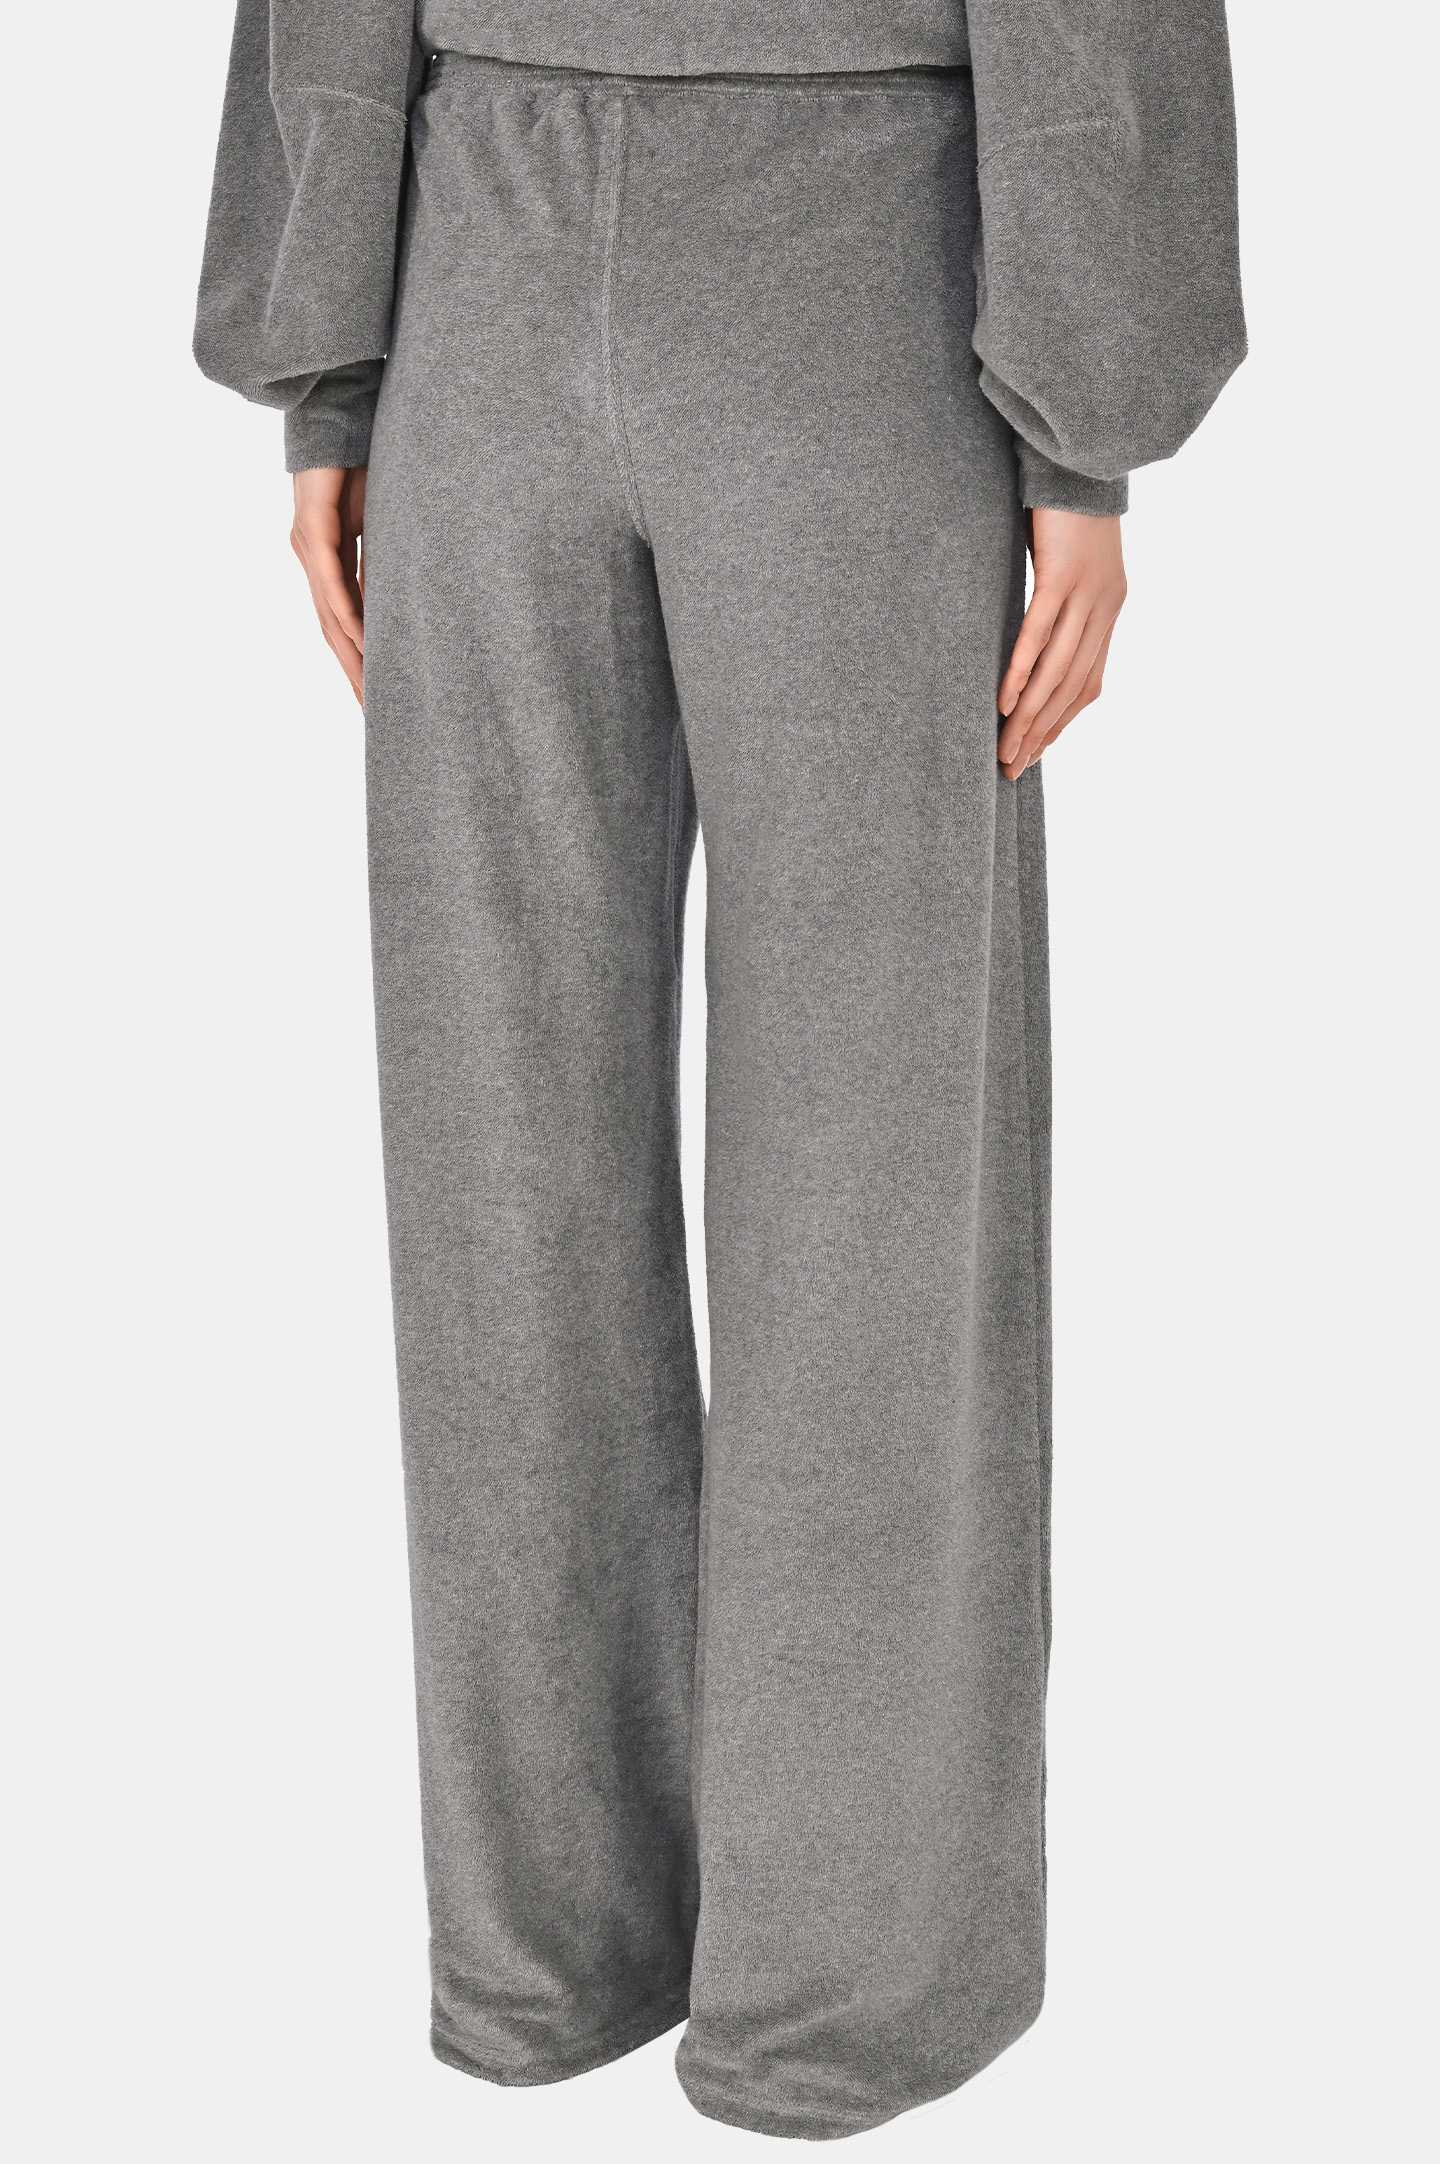 Спортивные широкие брюки JACOB LEE WJP9625, цвет: Серый, Женский